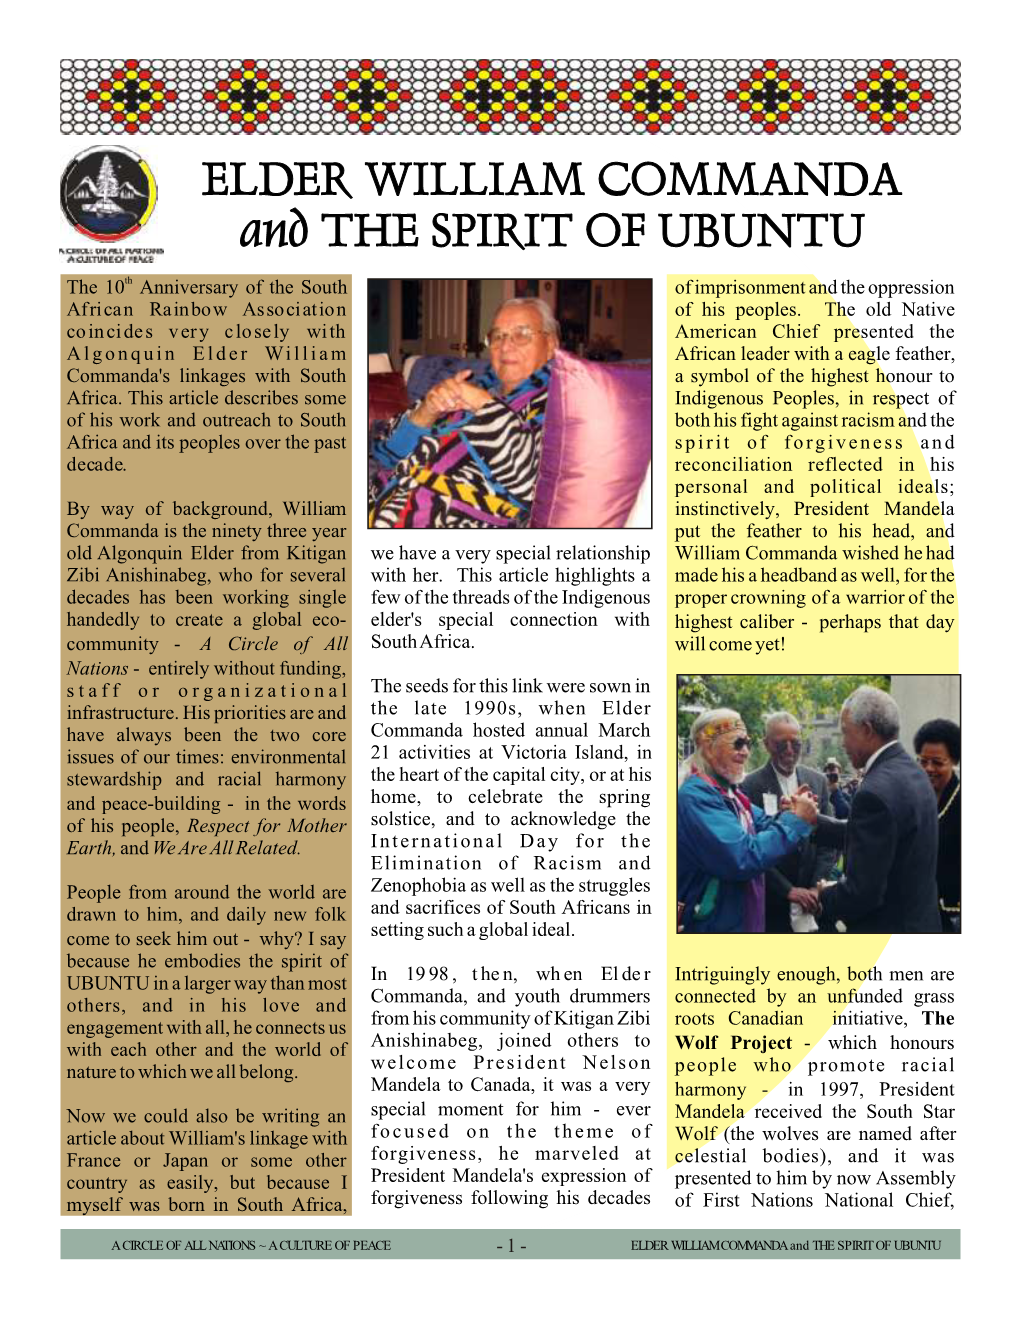 2007 William Commanda and the Spirit of Ubuntu